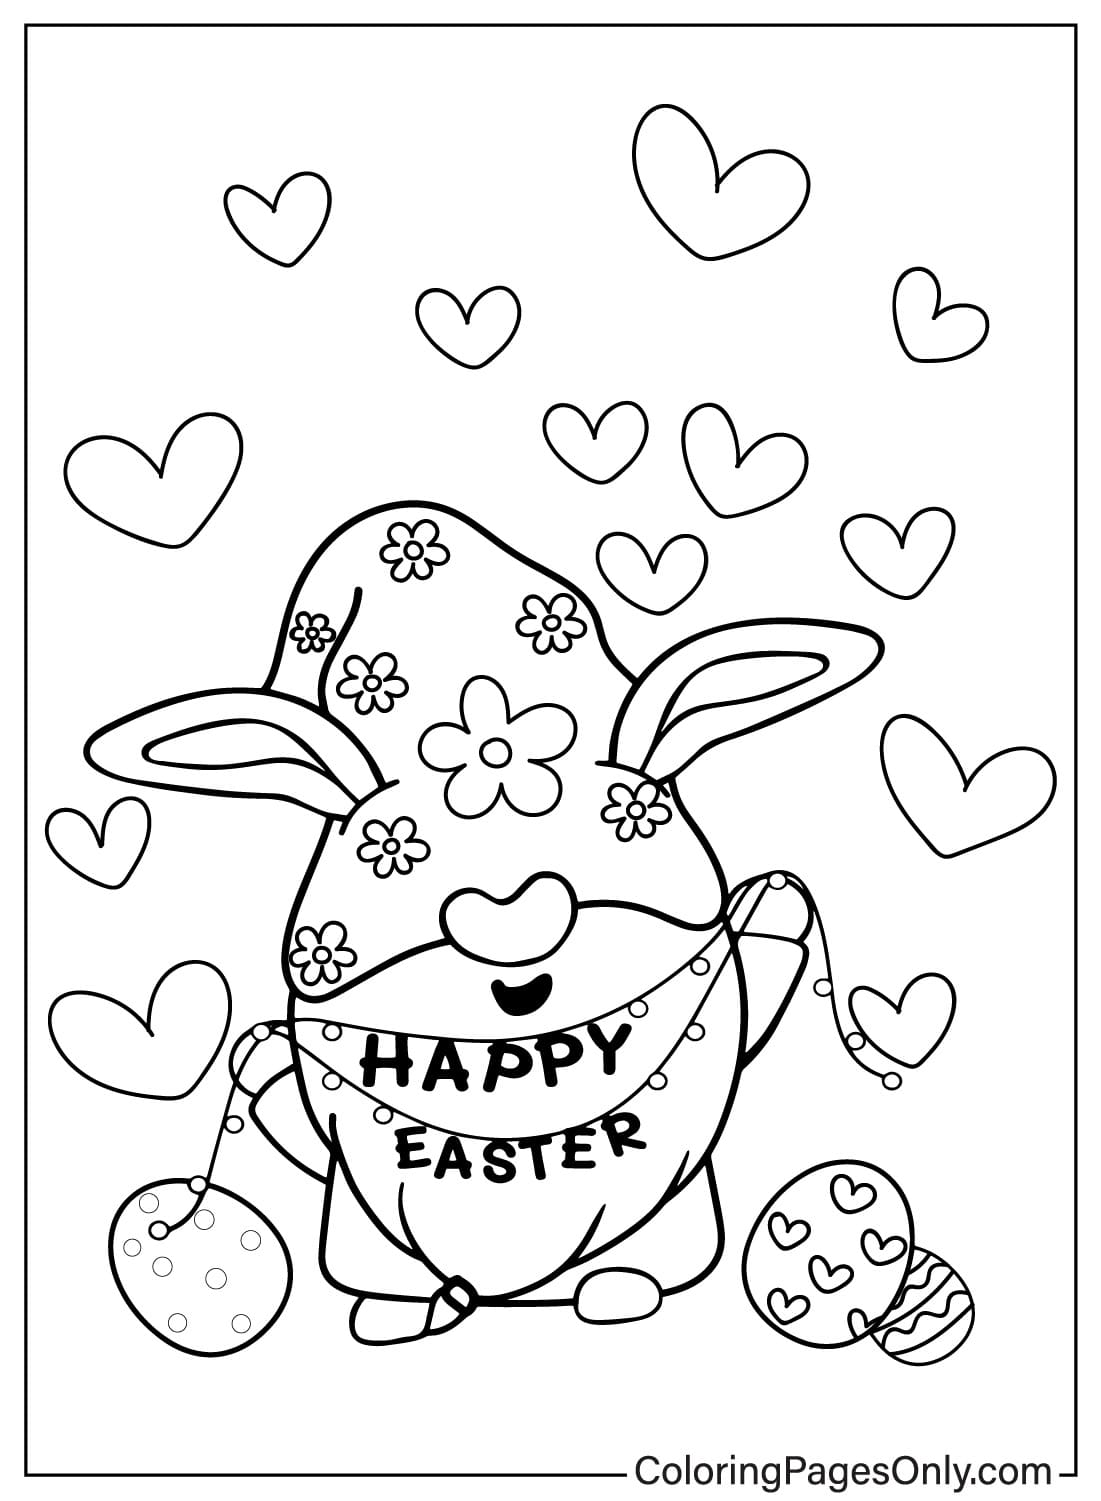 Imprimer la page à colorier du gnome de Pâques de Easter Gnome